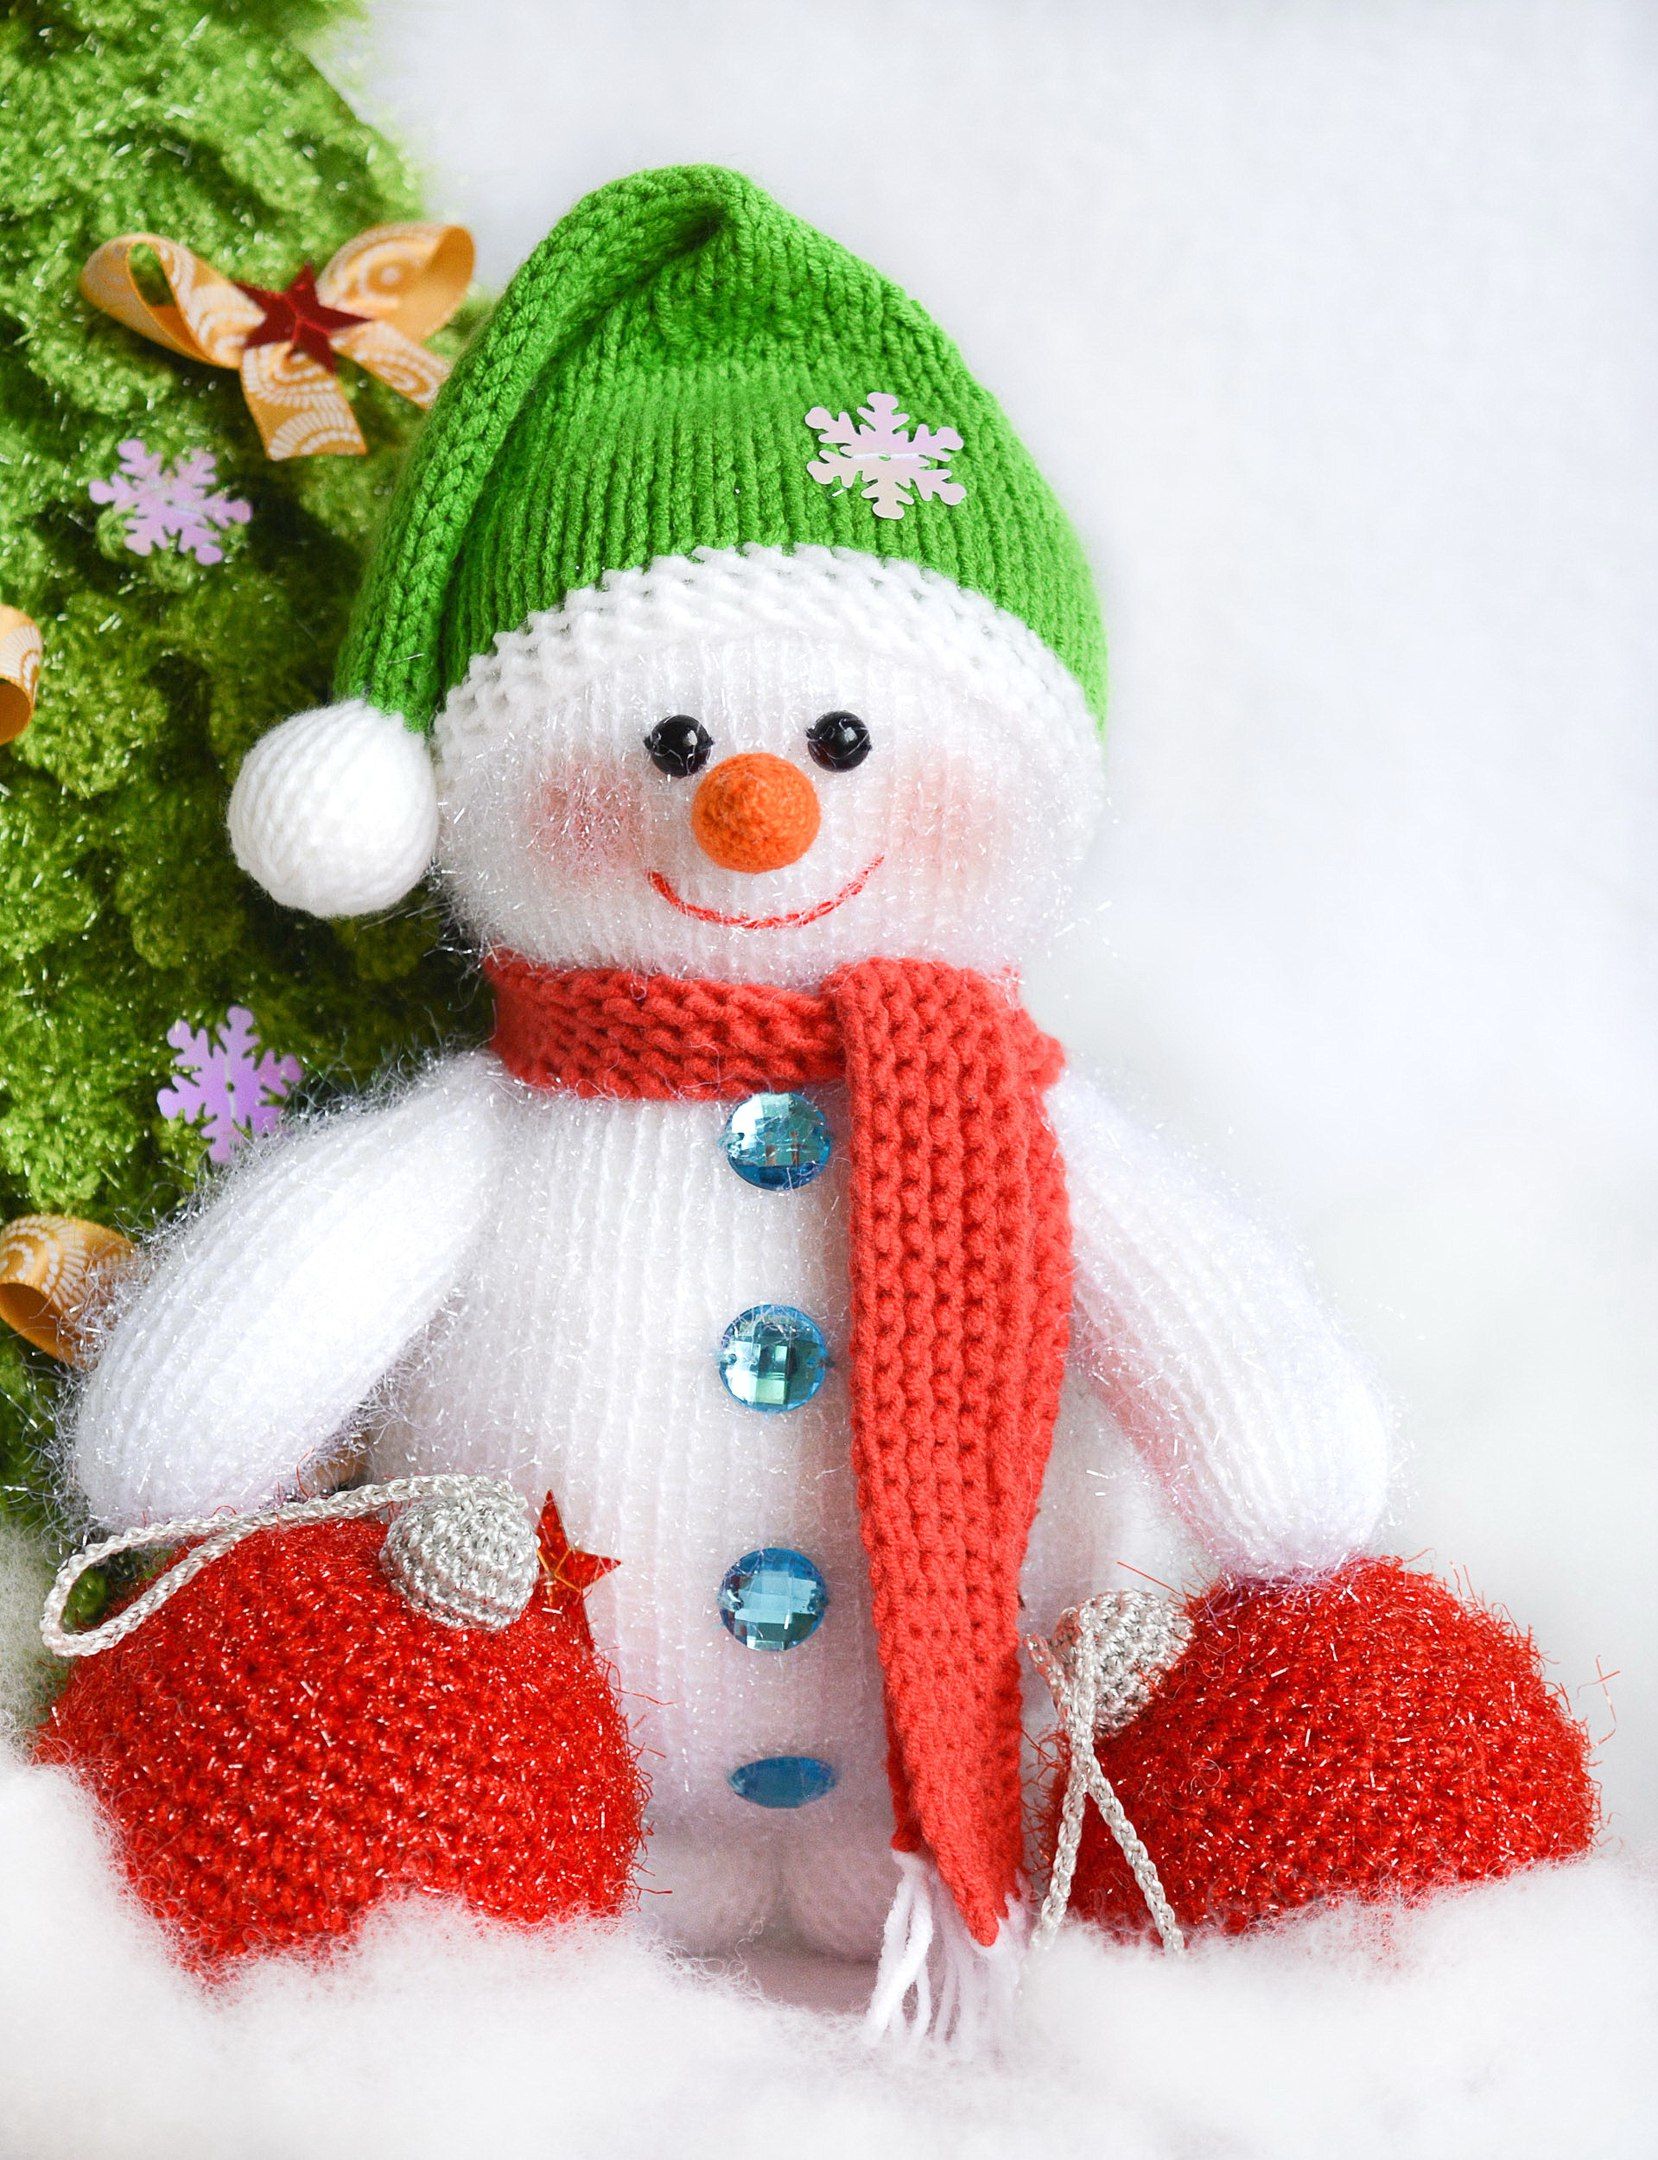 Симпатичная новогодняя поделка «Снеговик» для украшения дома к празднику